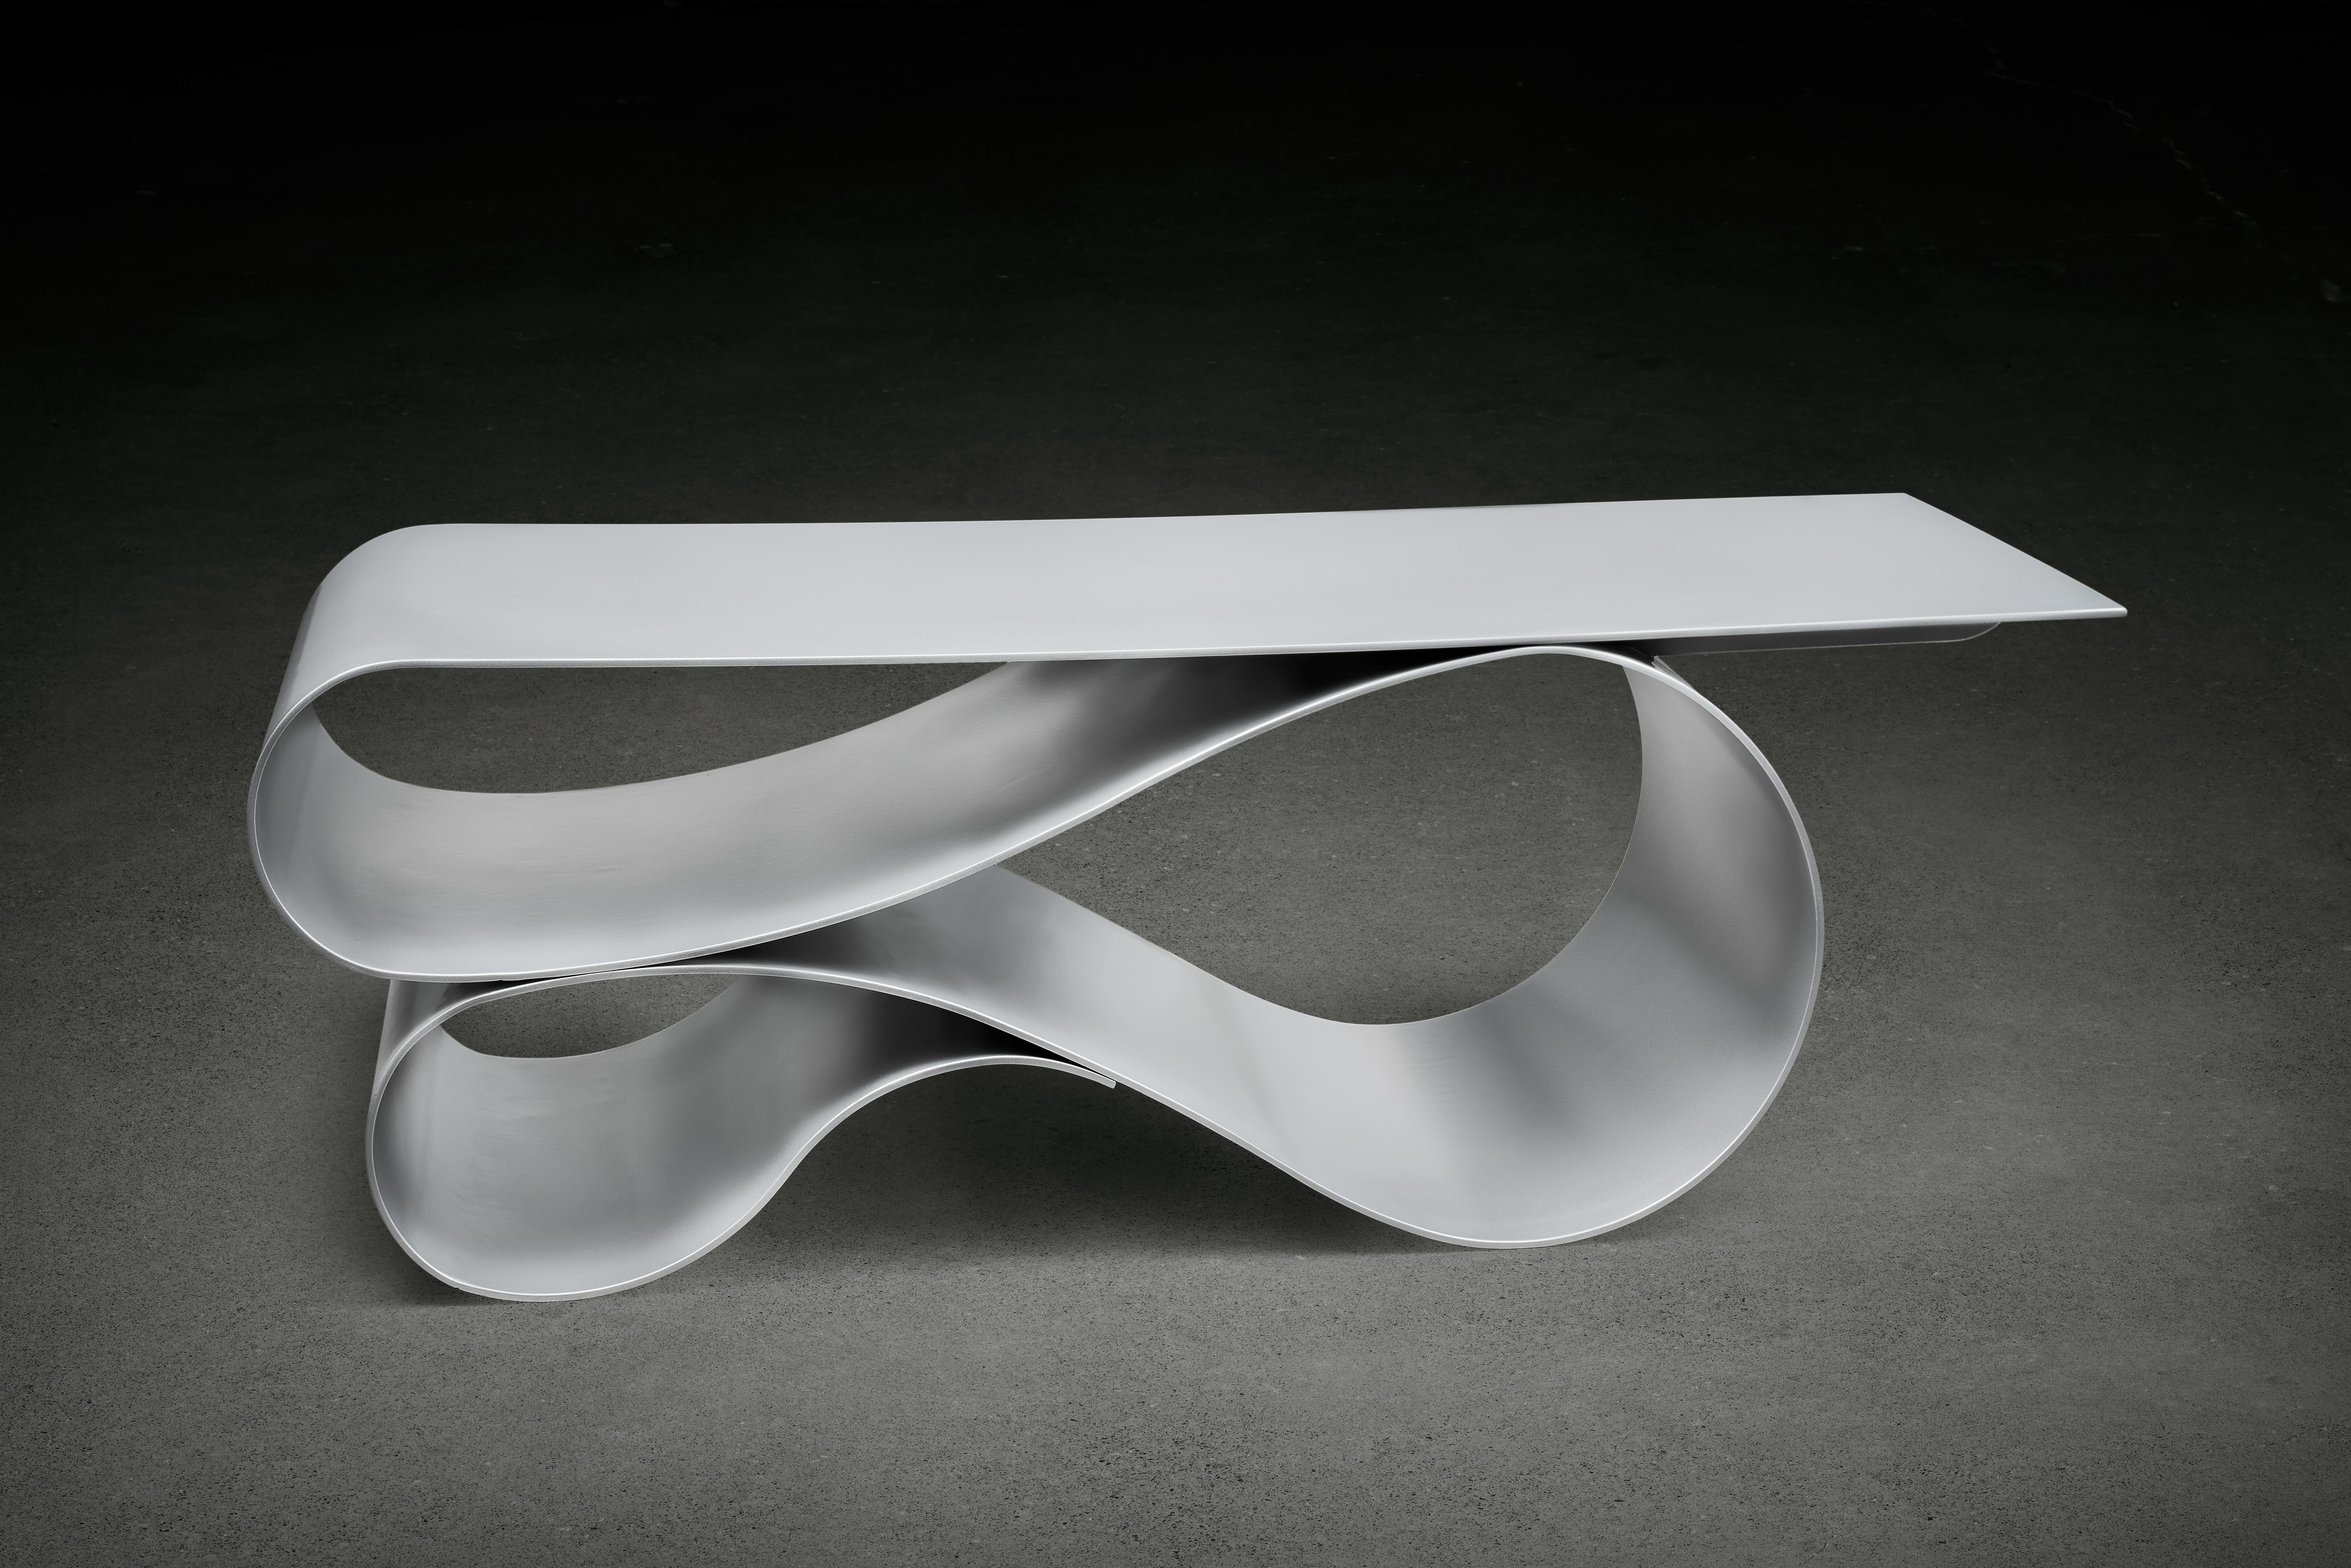 Table basse Whorl en aluminium thermolaqué par Neal Aronowitz Design
Dimensions : D 61 x L 139,7 x H 45,7 cm
Matériaux : Aluminium.
La taille et la couleur peuvent être modifiées et personnalisées. 

Une déclaration sculpturale élégante et